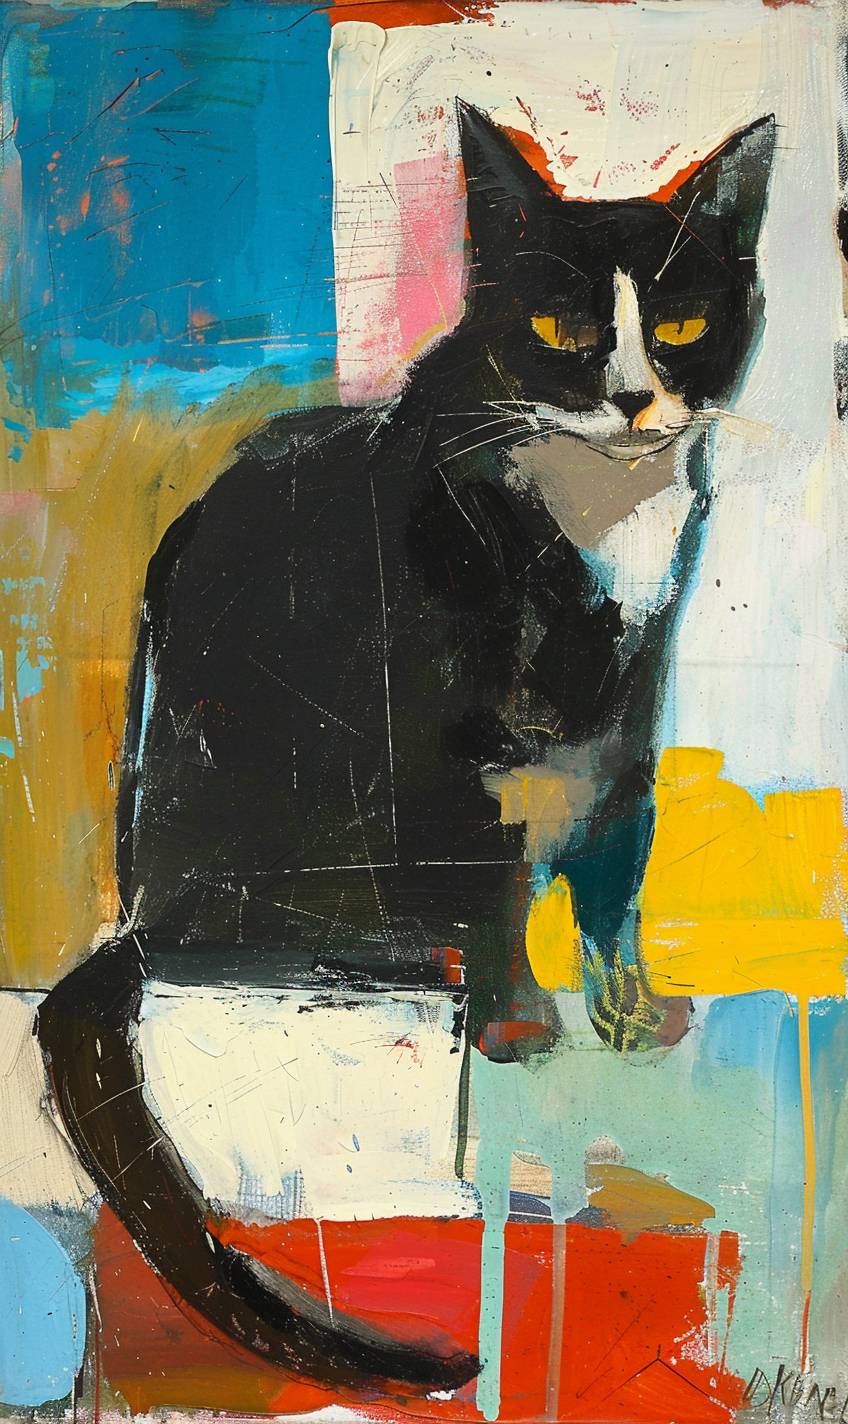 Feline animal painting in style of Richard Diebenkorn